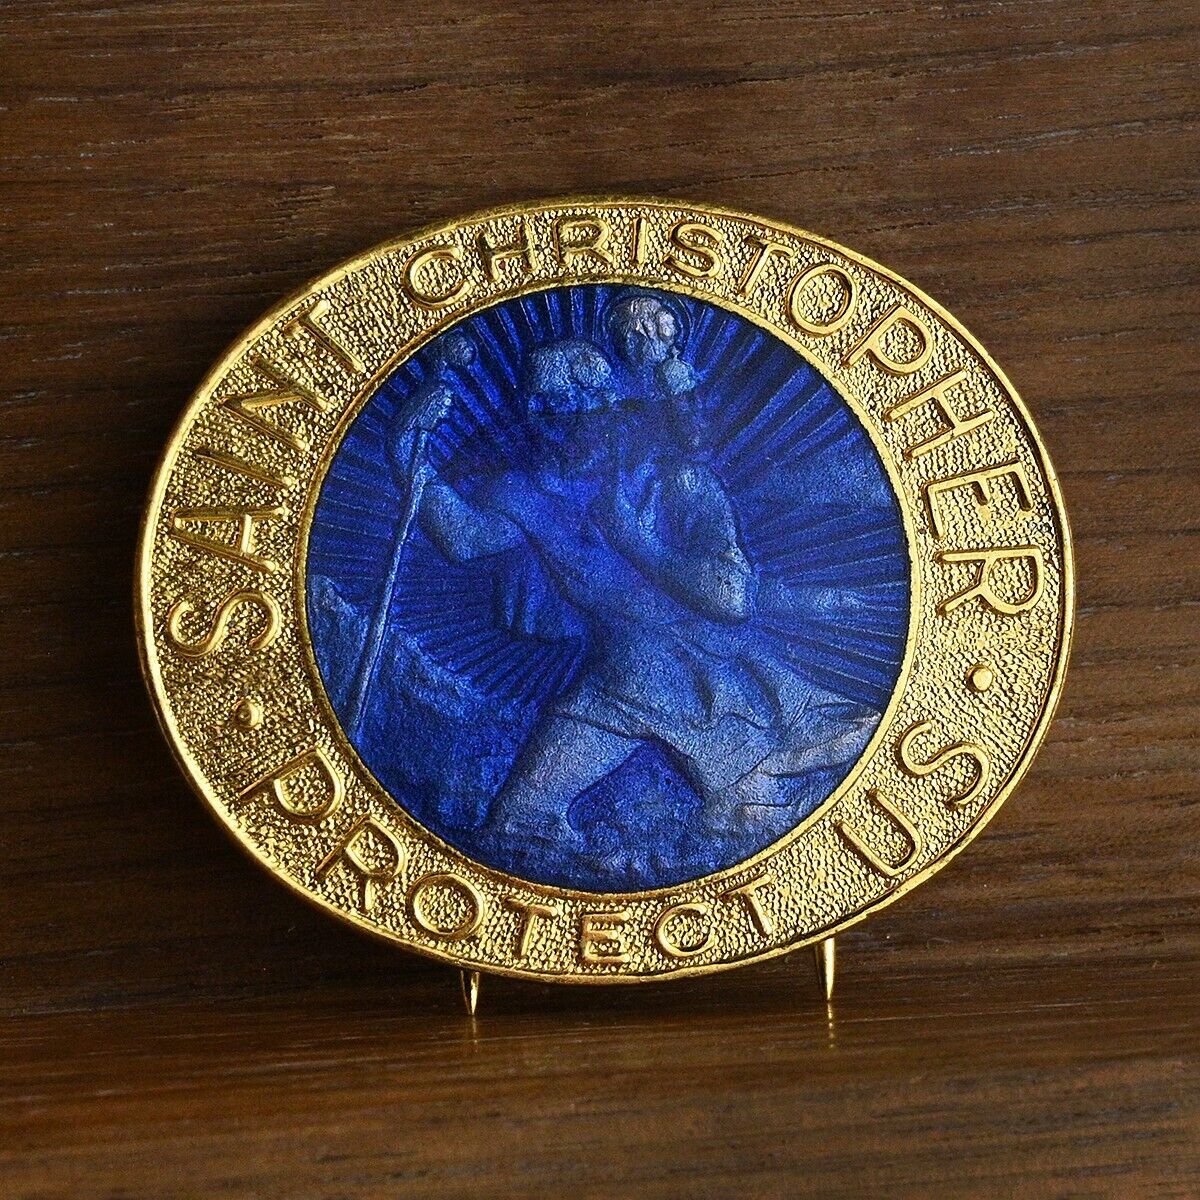 VTG St Christopher Medal Blue Enamel w Gold Color Metal Pin Back for Autos